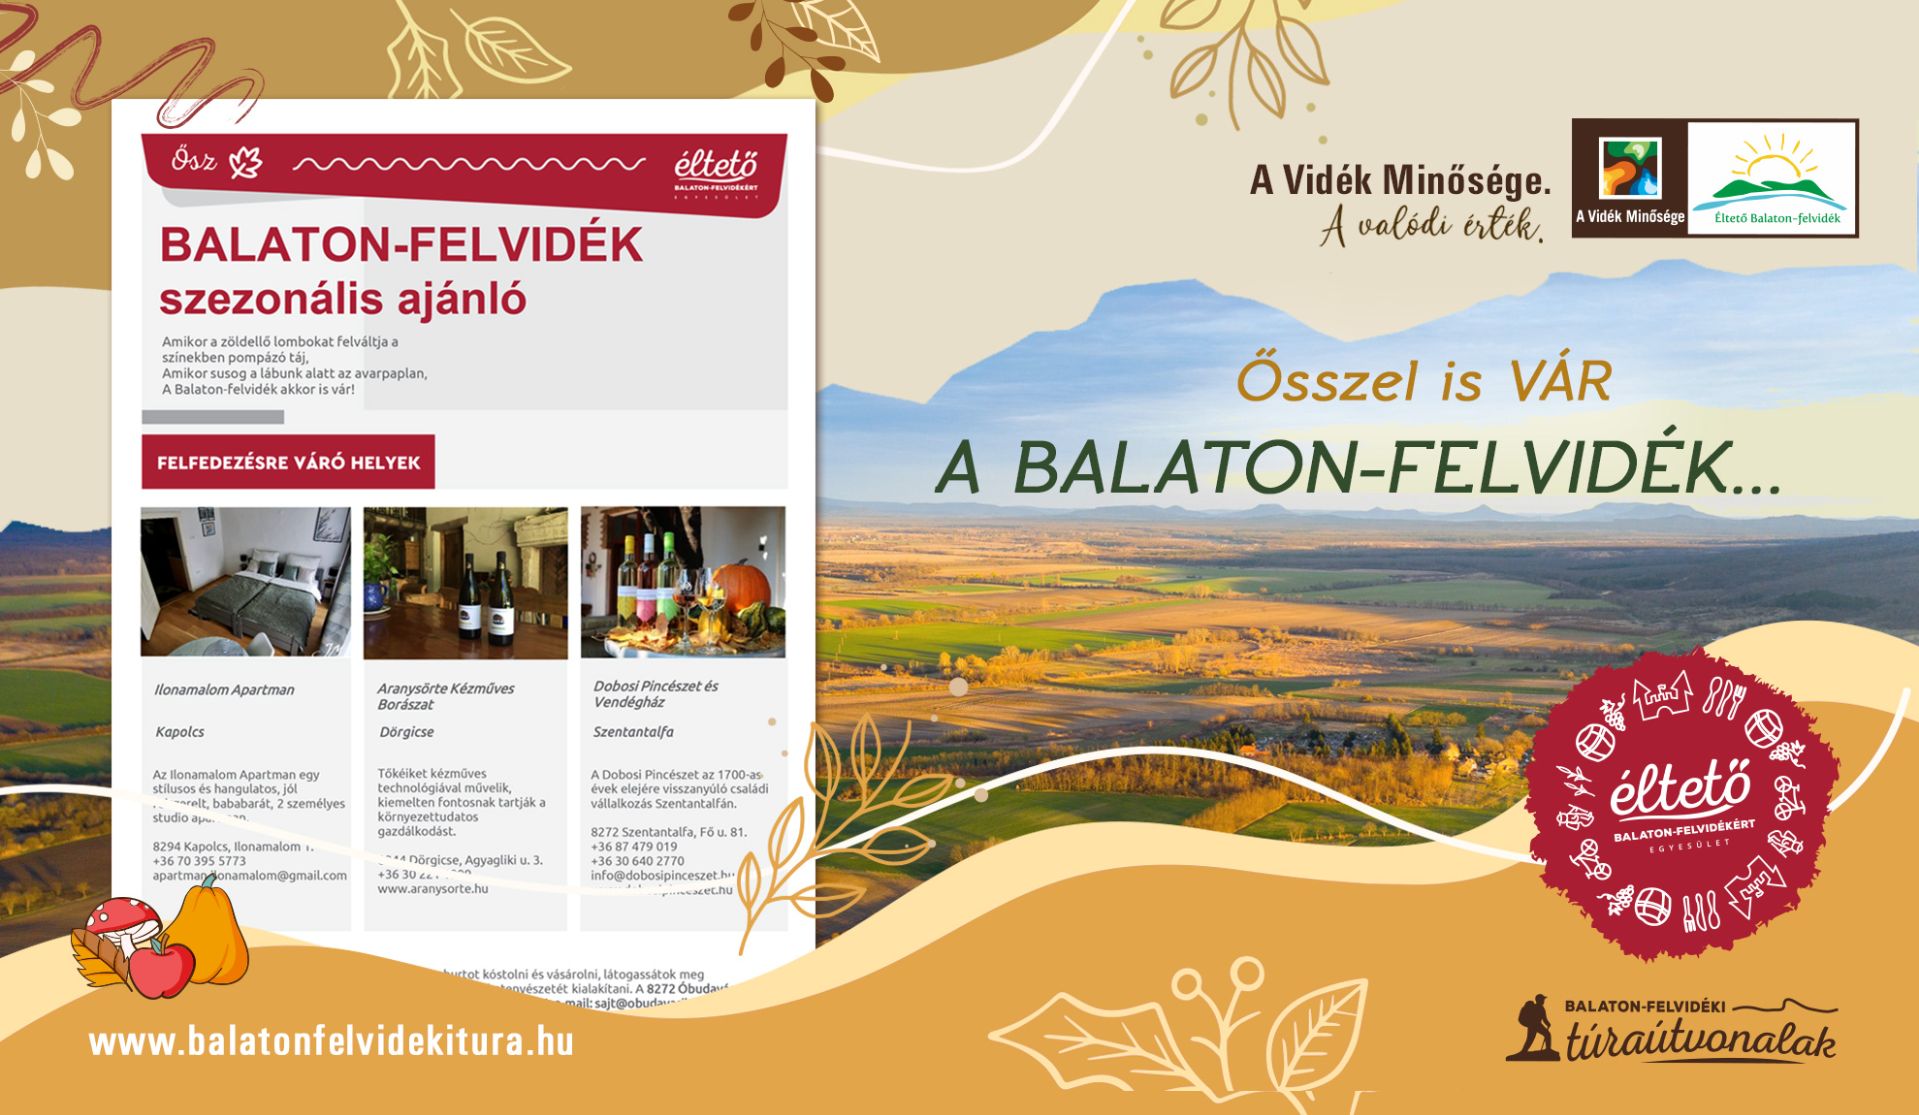 Őszi turisztikai ajánló az Éltető Balaton-felvidékért Egyesület területéről